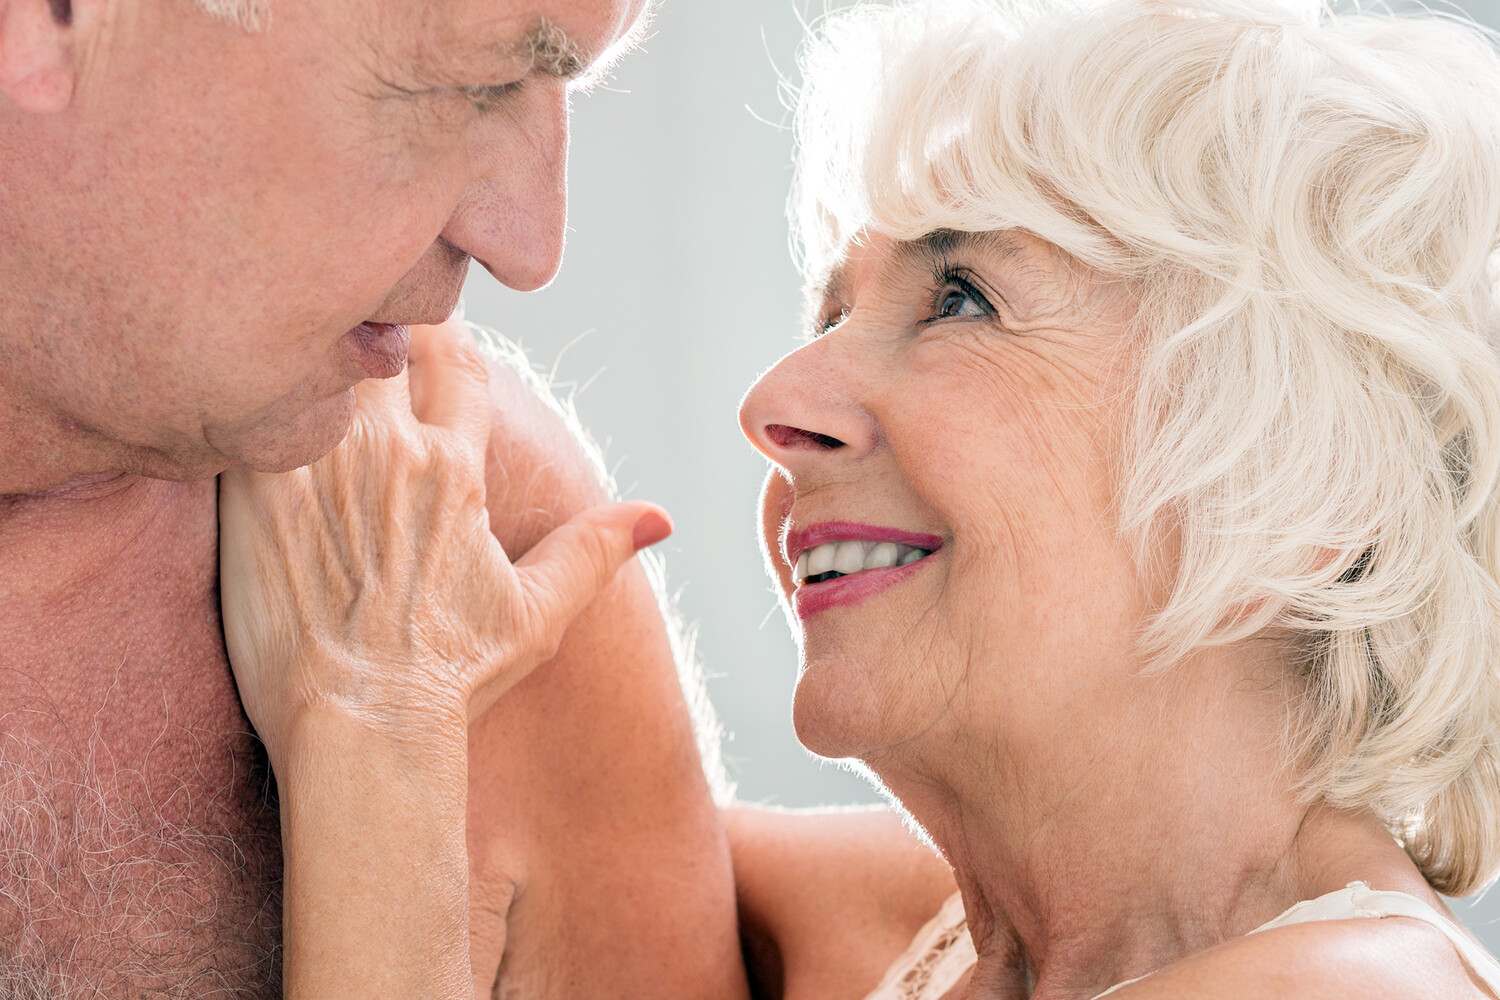 Сексуальная активность среди пожилых людей